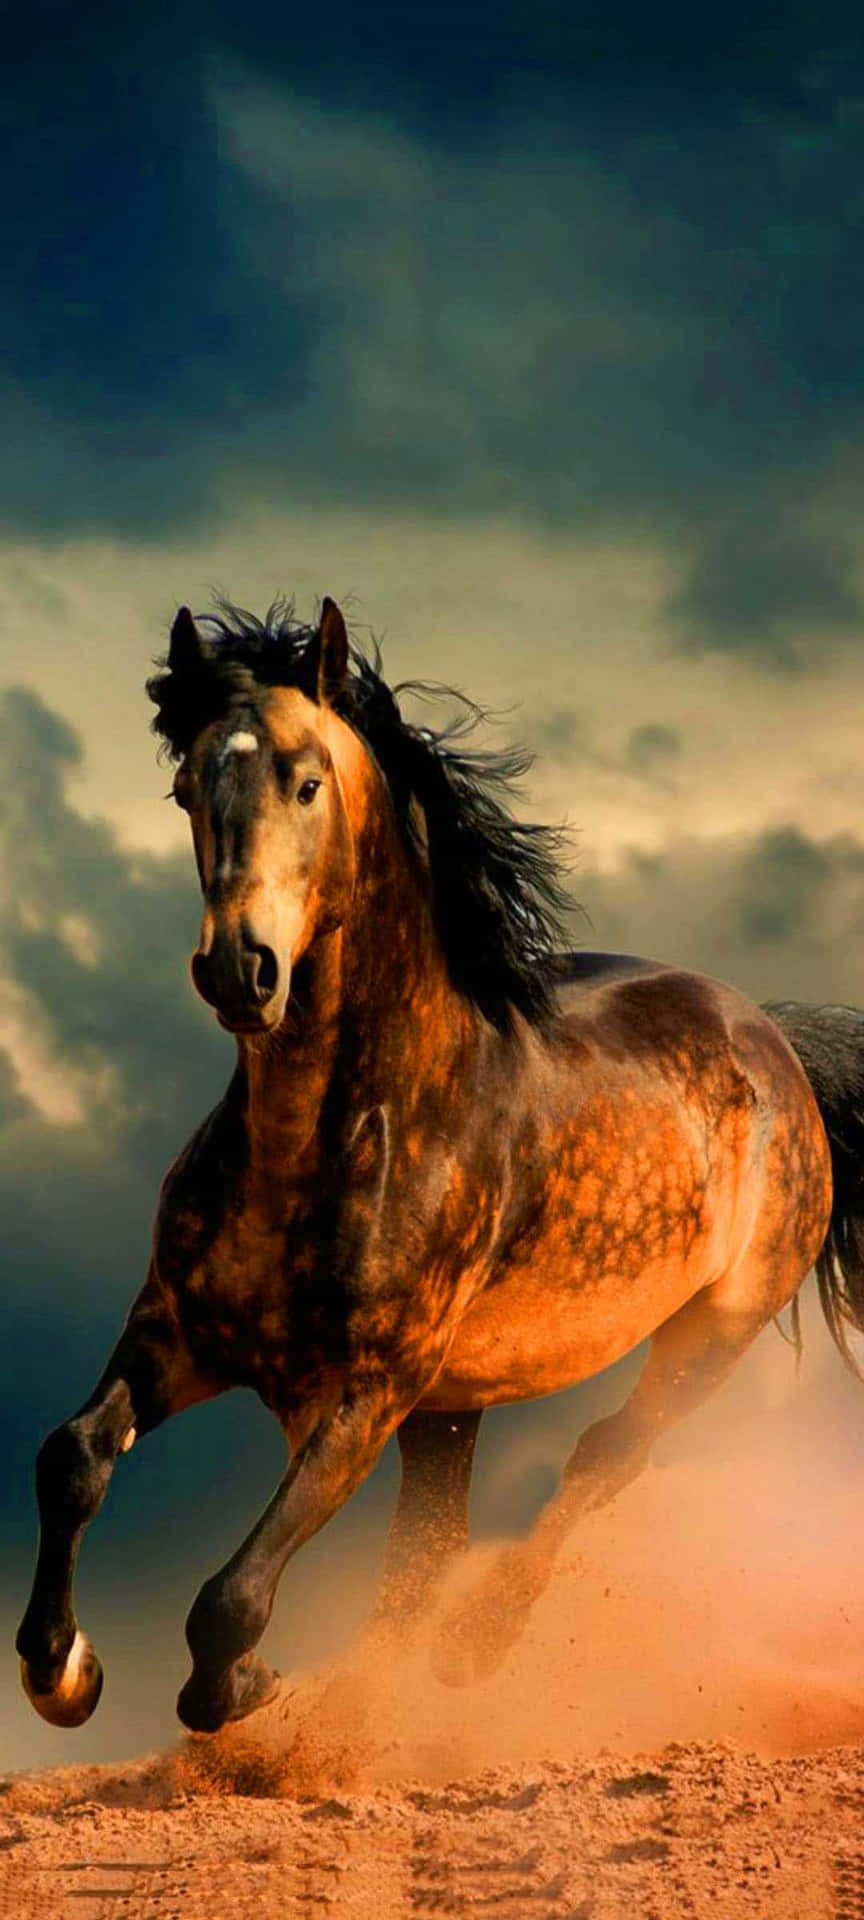 Bellissimaimmagine Di Un Cavallo Che Corre Nella Sabbia.